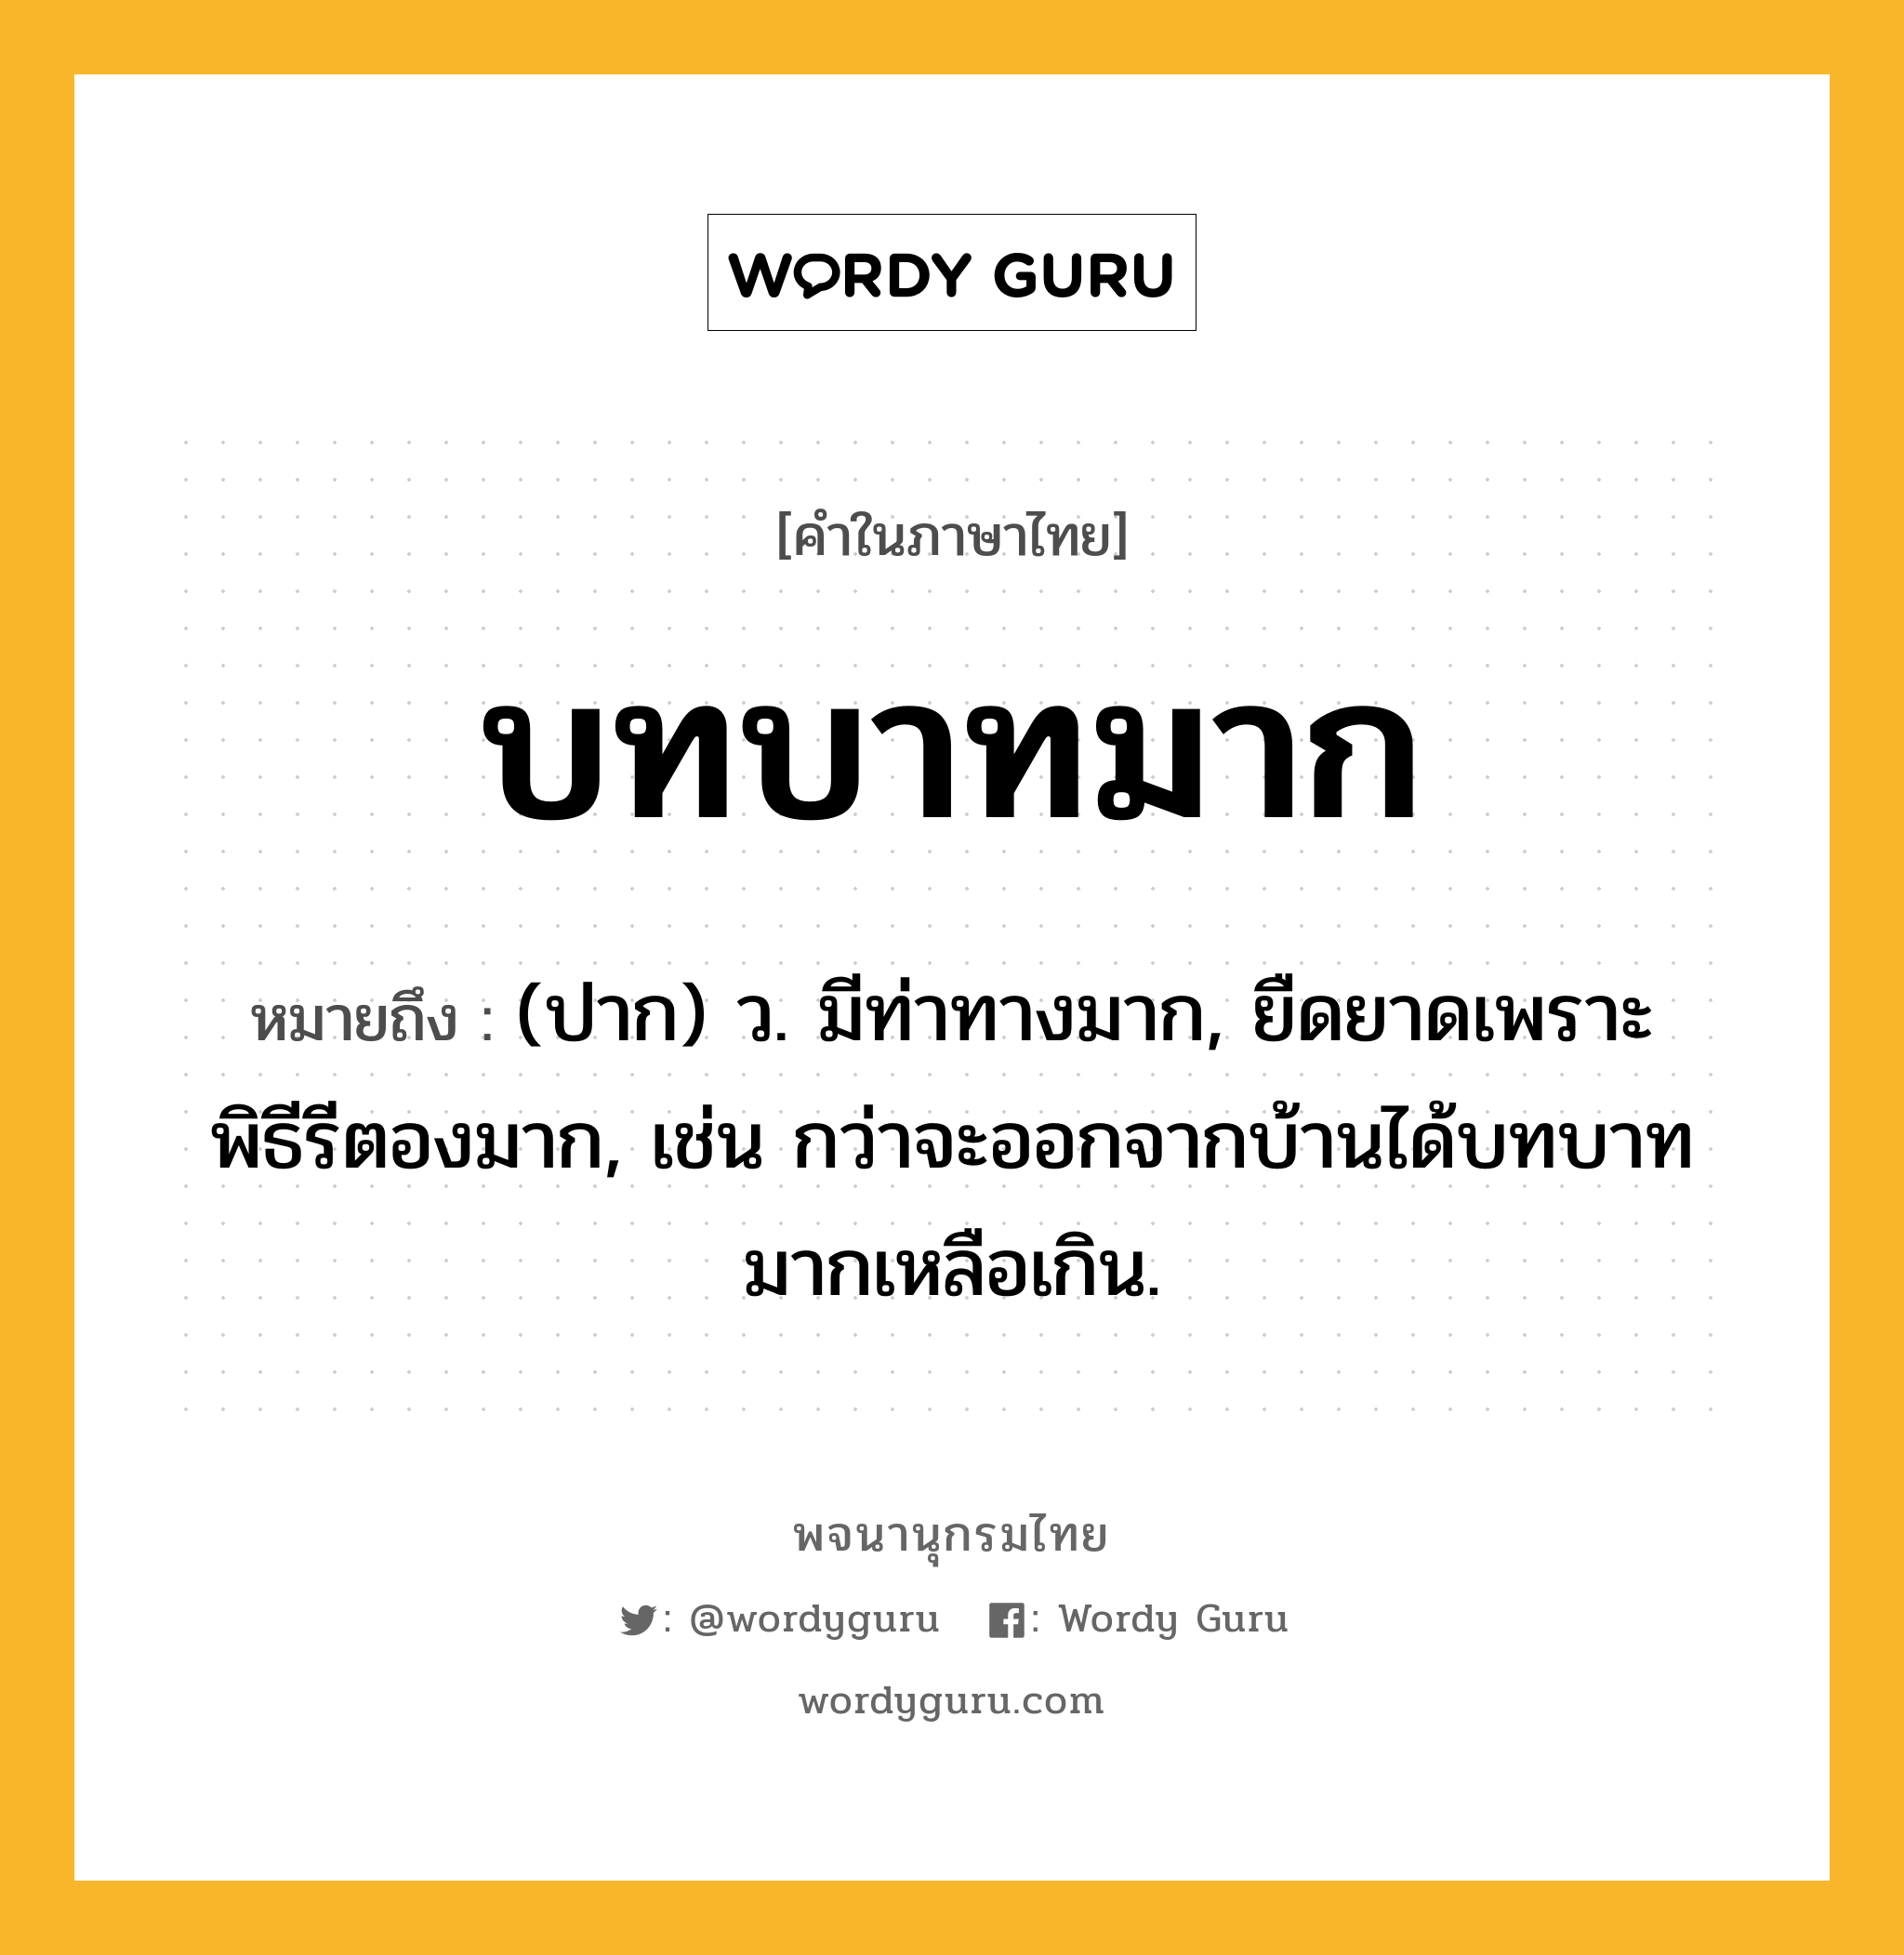 บทบาทมาก ความหมาย หมายถึงอะไร?, คำในภาษาไทย บทบาทมาก หมายถึง (ปาก) ว. มีท่าทางมาก, ยืดยาดเพราะพิธีรีตองมาก, เช่น กว่าจะออกจากบ้านได้บทบาทมากเหลือเกิน.